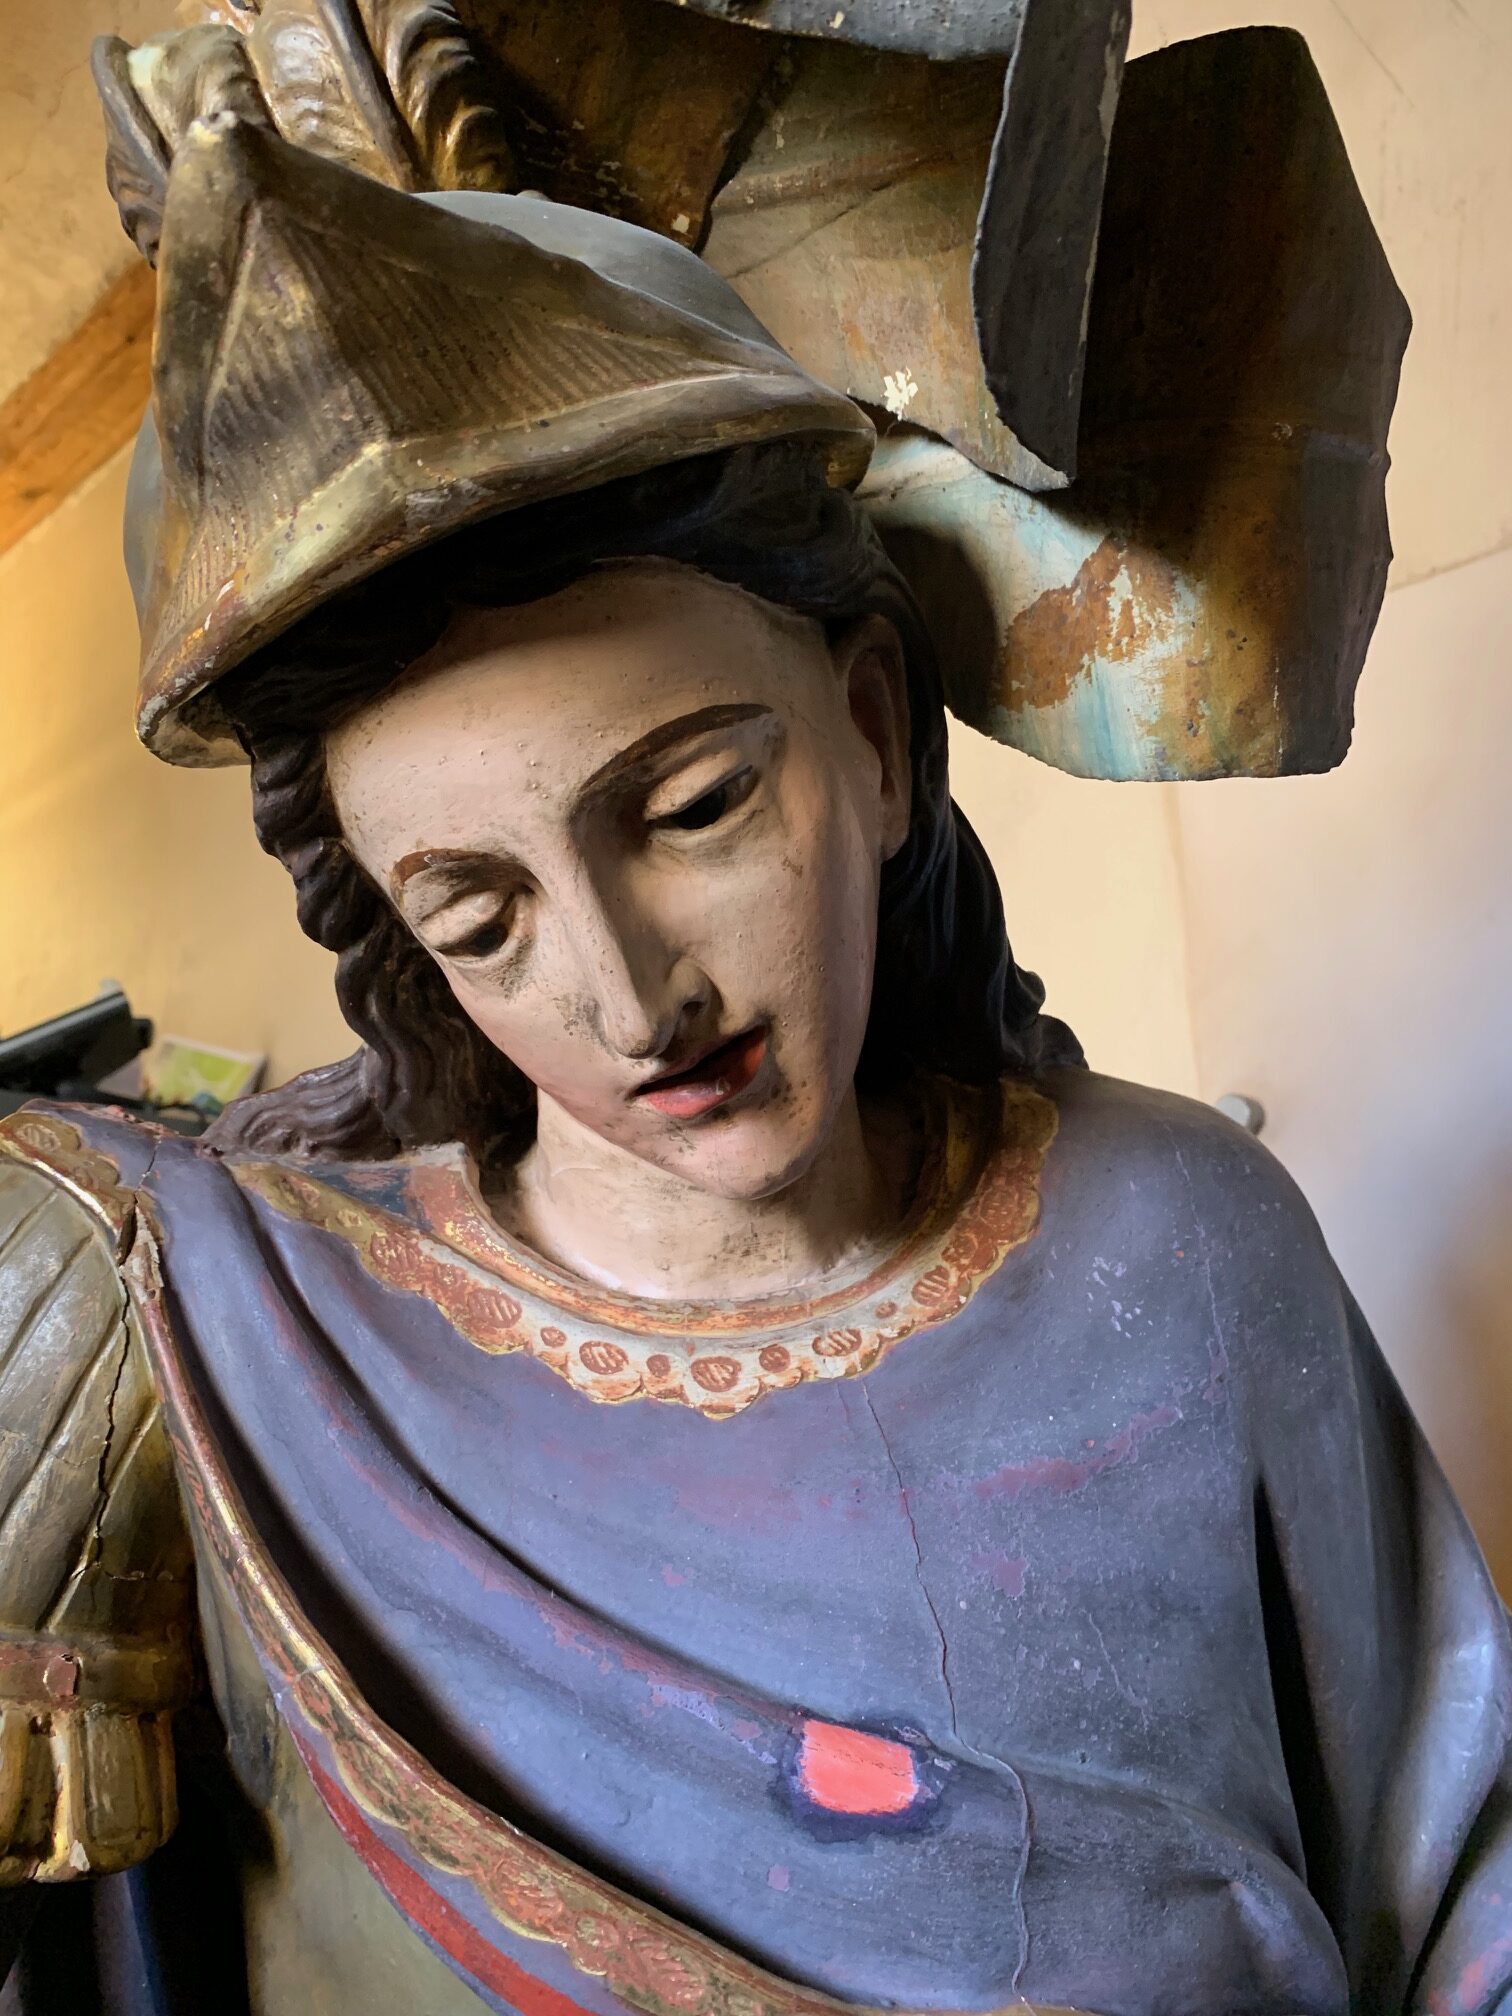 Fotografía de la escultura barroca de San MIguel que está siendo restaurada en el museo de Tudela.